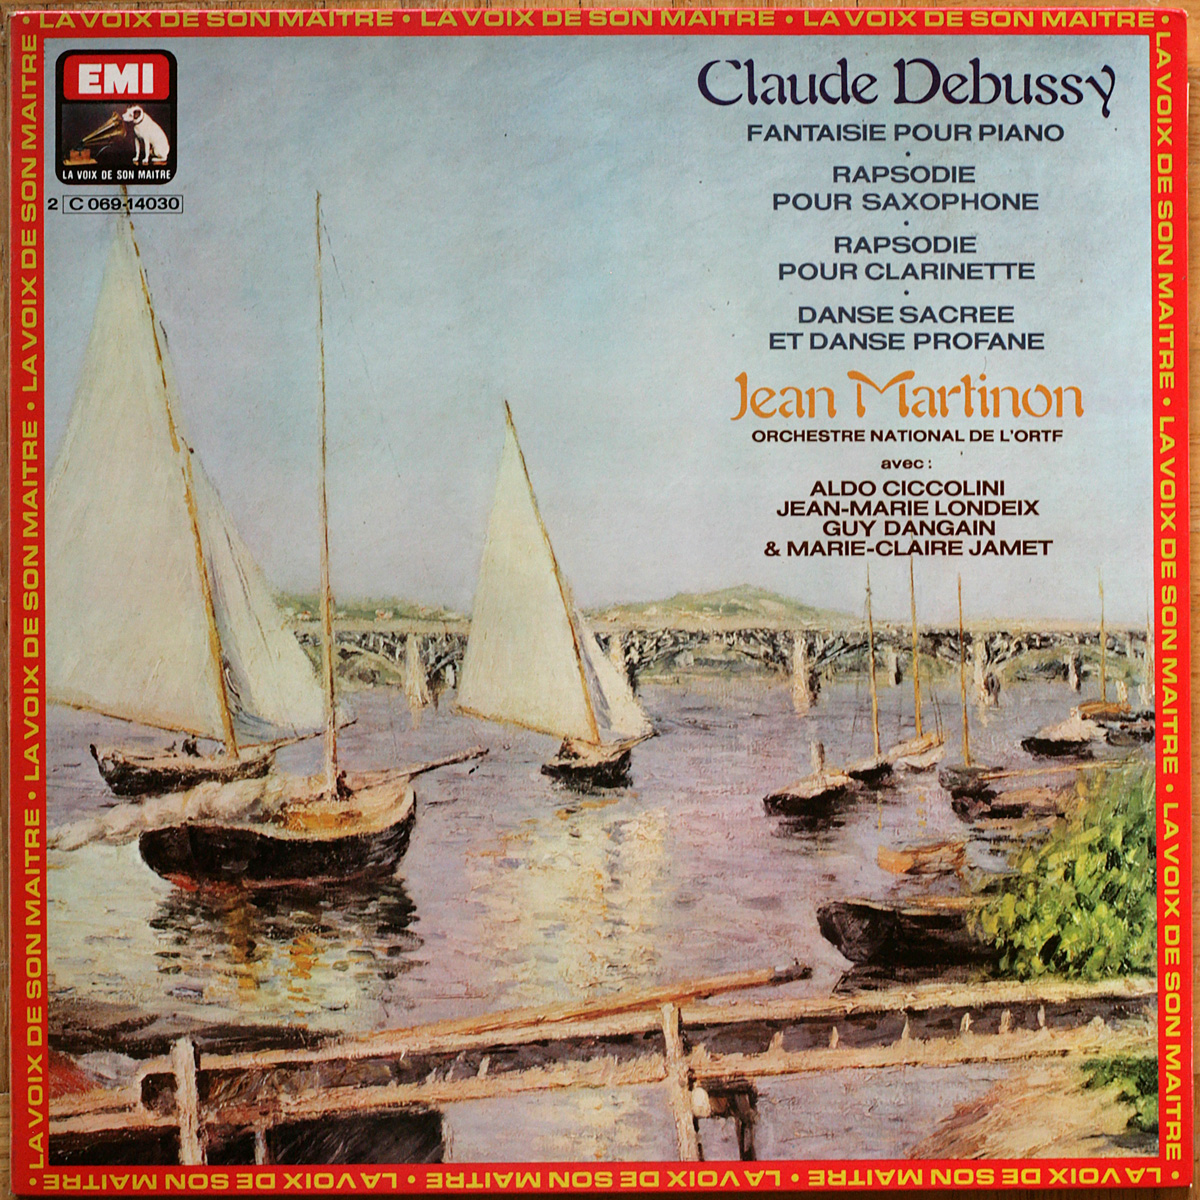 Debussy • Fantaisie pour piano • Rhapsodie pour clarinette • Rhapsodie pour saxophone • Danses • EMI 2C 069-14030 • Quadraphonic • Orchestre National de l’ORTF • Jean Martinon